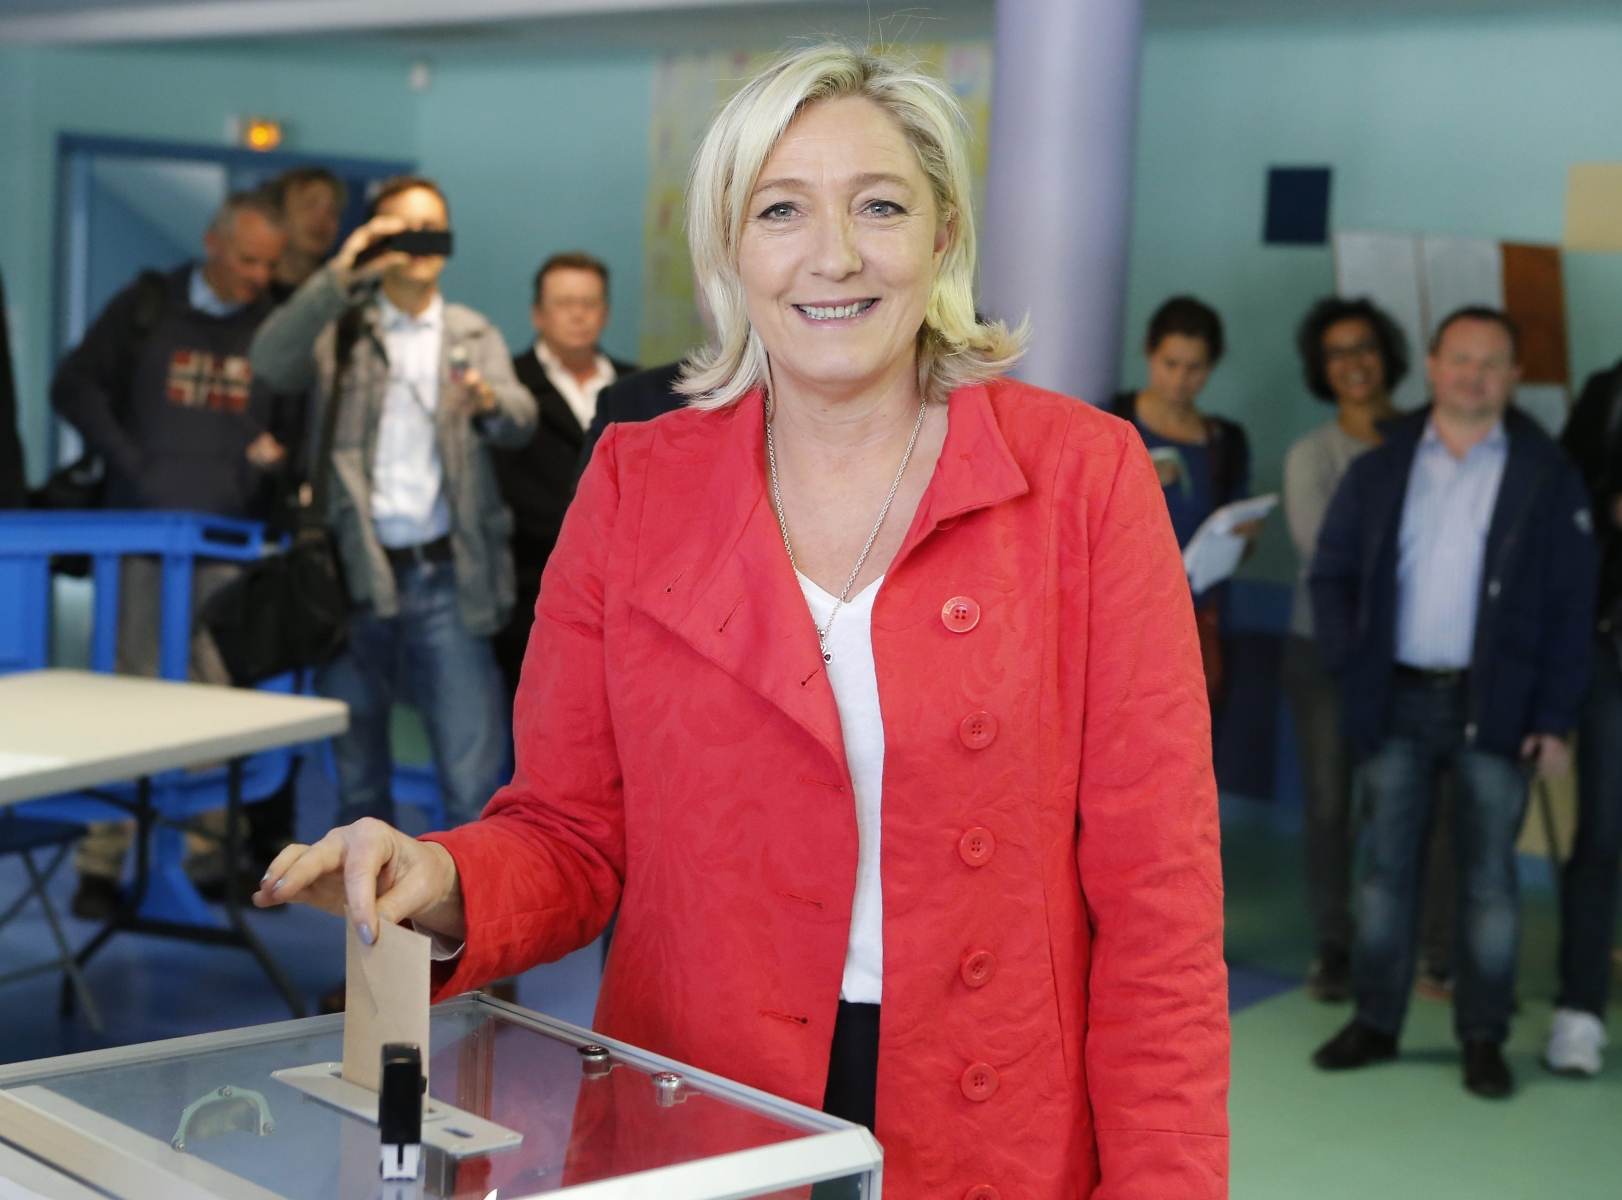 La président du FN Marine Le Pen a déposé son vote dans sa commune d'Henin-Beaumont (Pas-de-Calais).